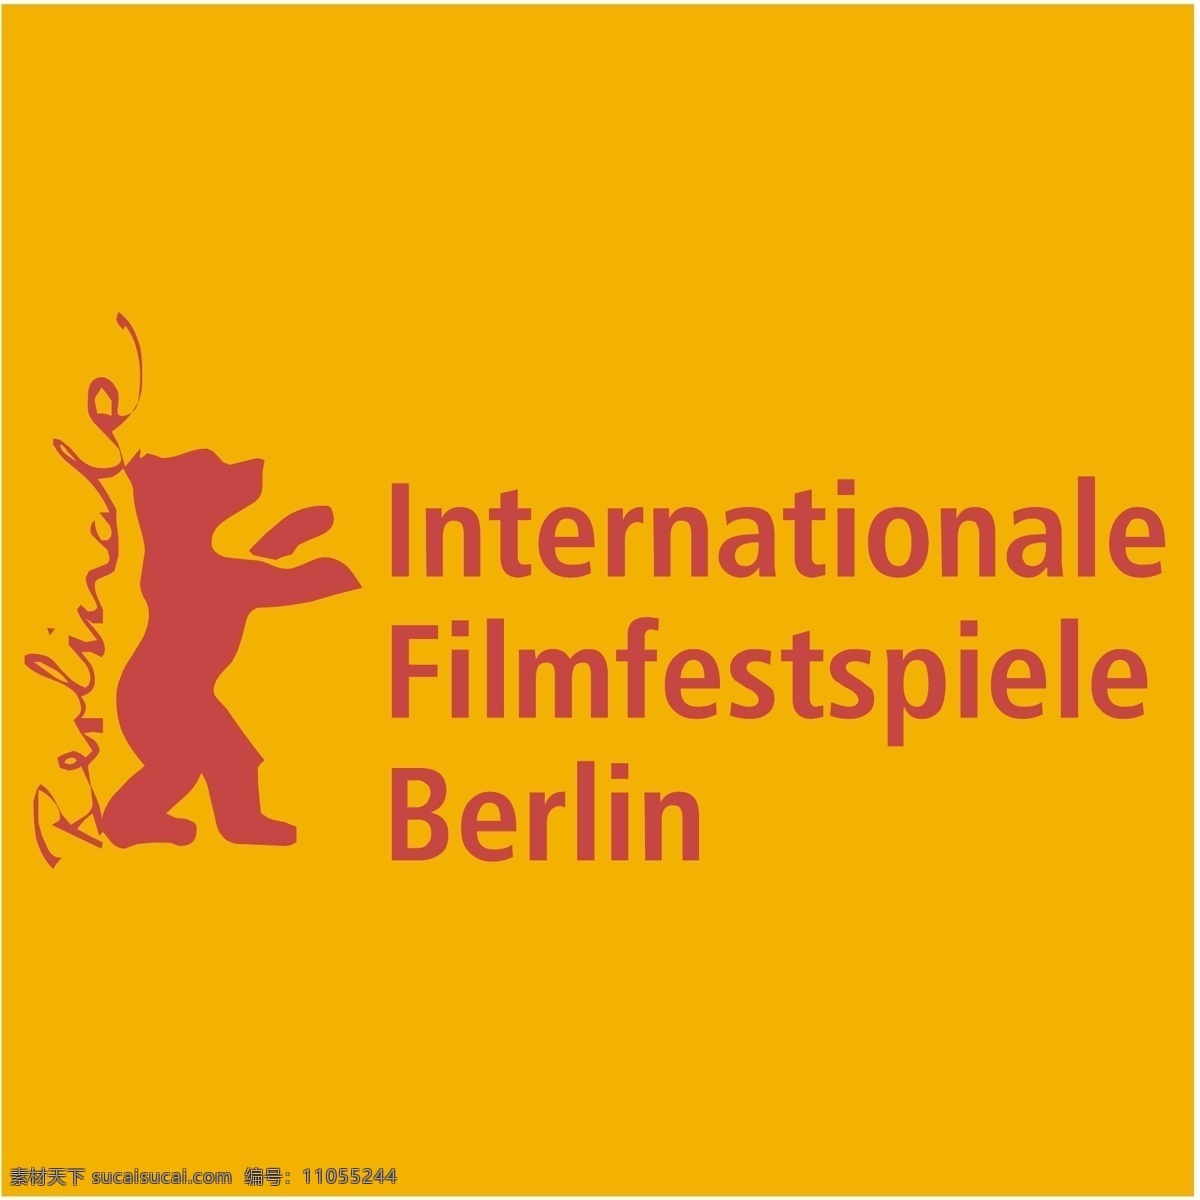 柏林 电影节 标识 公司 免费 品牌 品牌标识 商标 矢量标志下载 免费矢量标识 矢量 psd源文件 logo设计